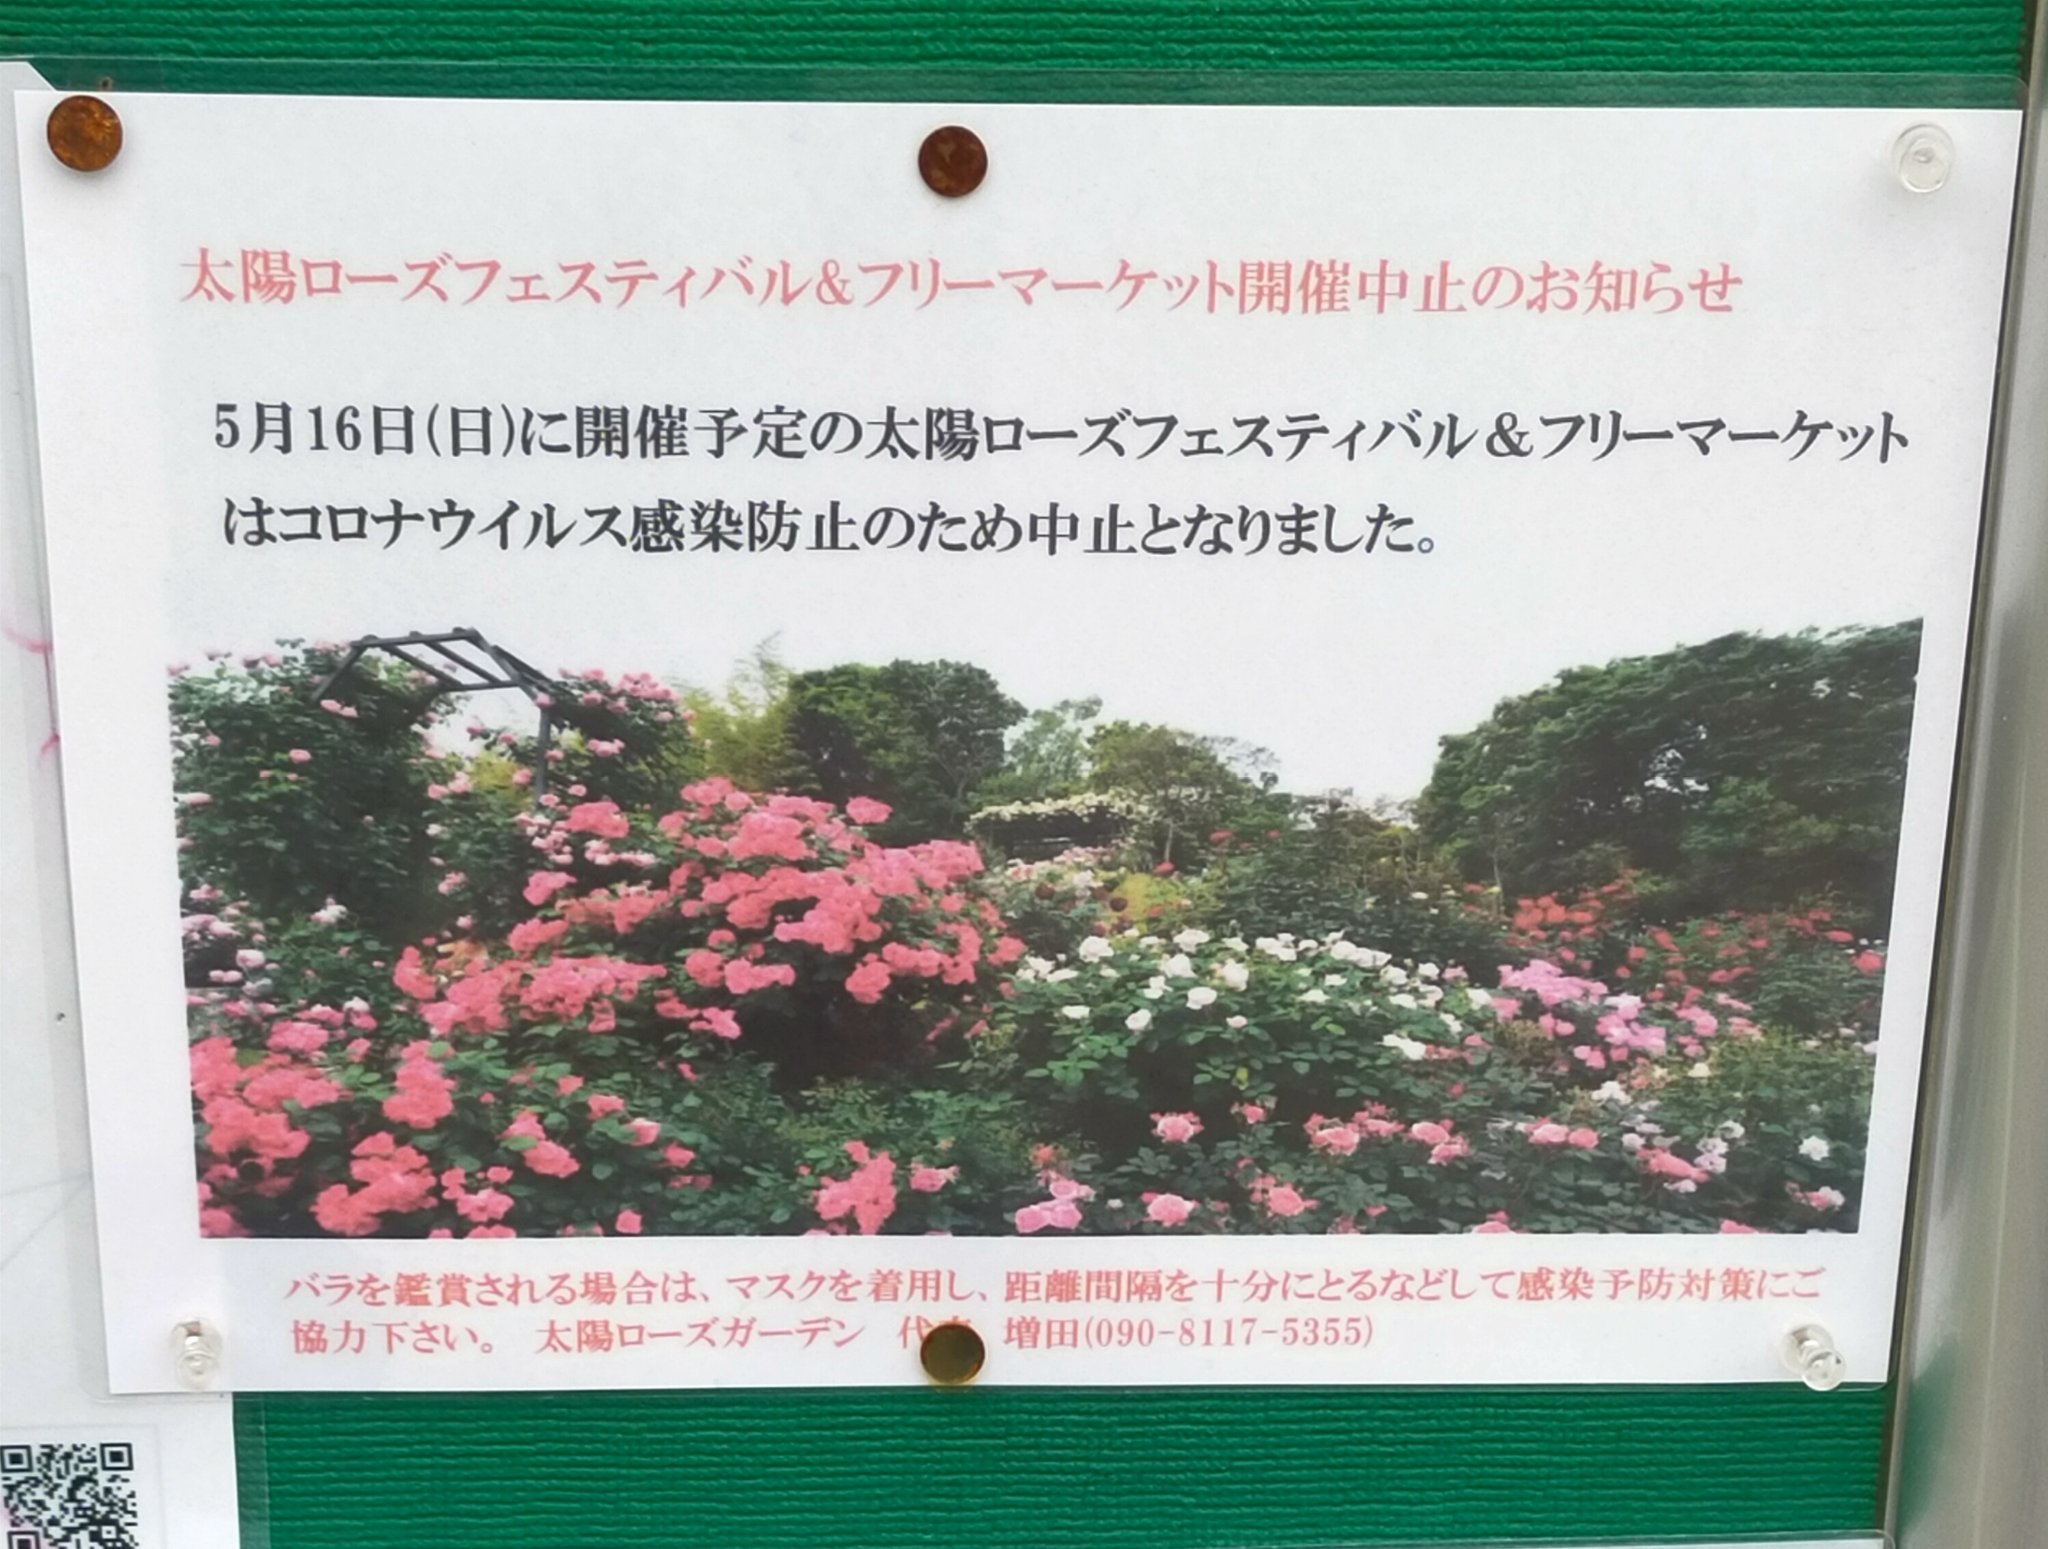 勝手にあざみ野情報局 荏子田の太陽公園 今年もバラが綺麗に咲いておりました しばらく見頃かと思います ちなみに今年もフェスティバルはコロナで中止です あざみ野 T Co Csdduoe6ui Twitter